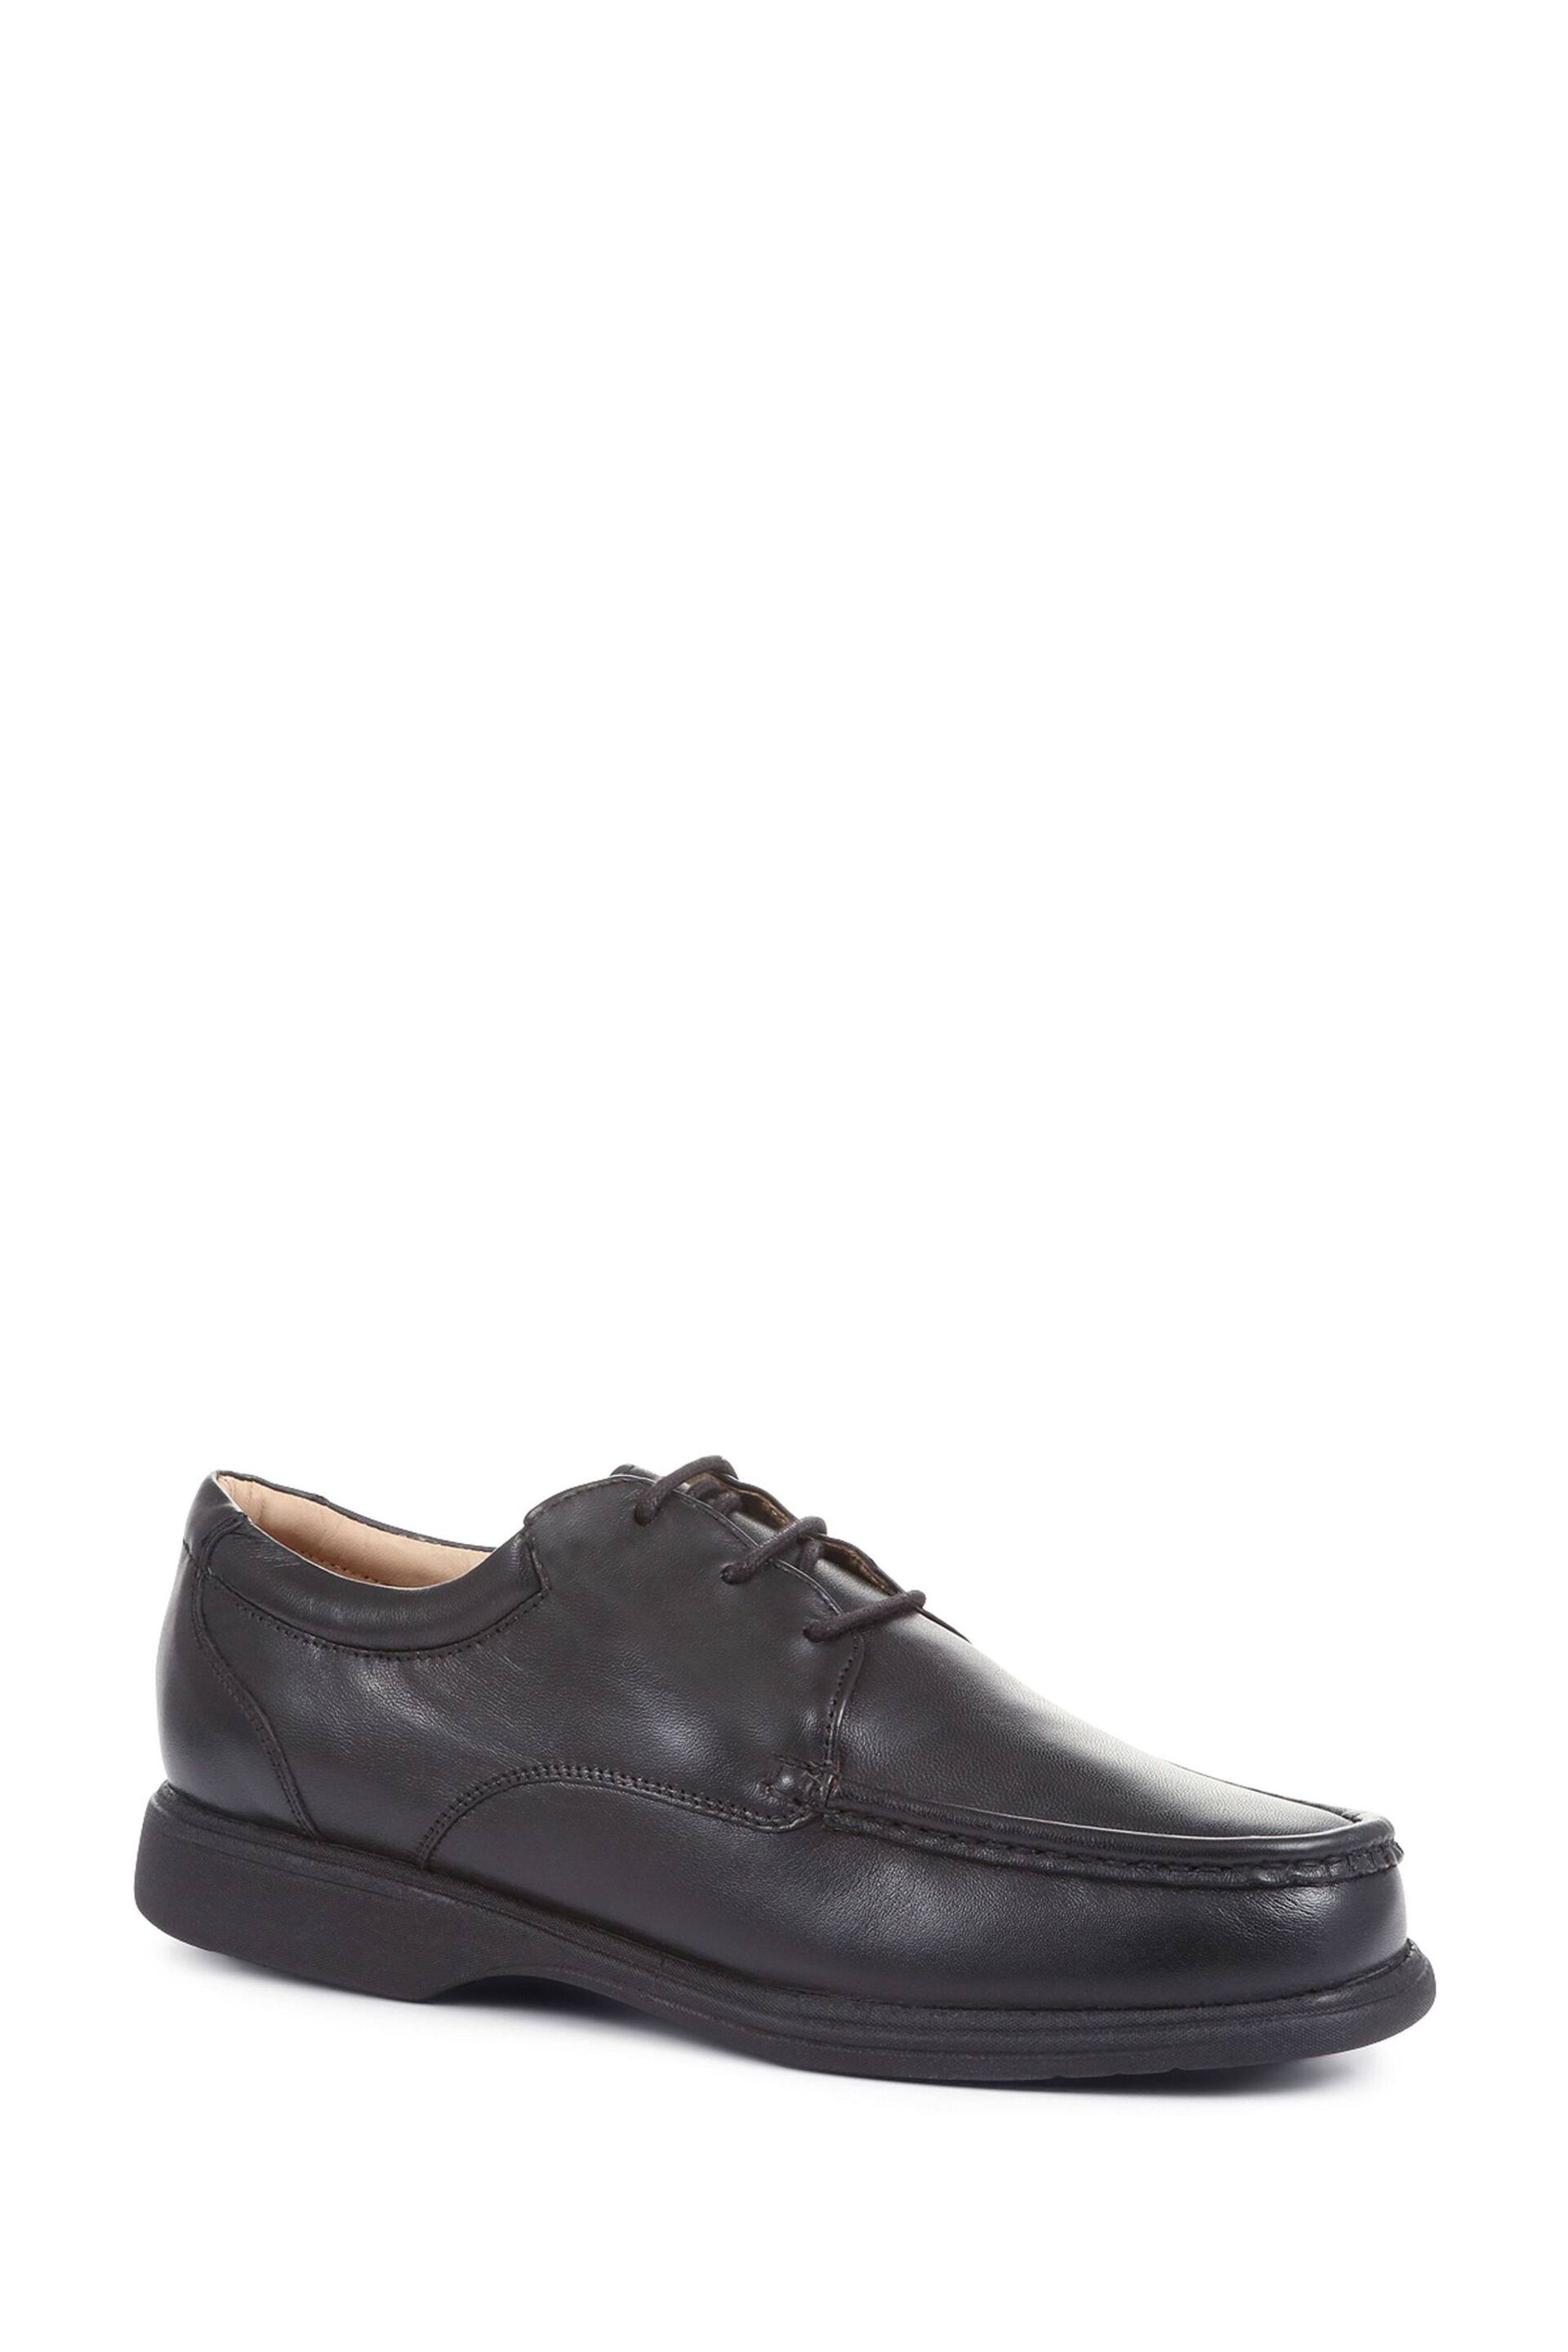 Pavers Gents Black Lace Smart Shoes - Image 2 of 5